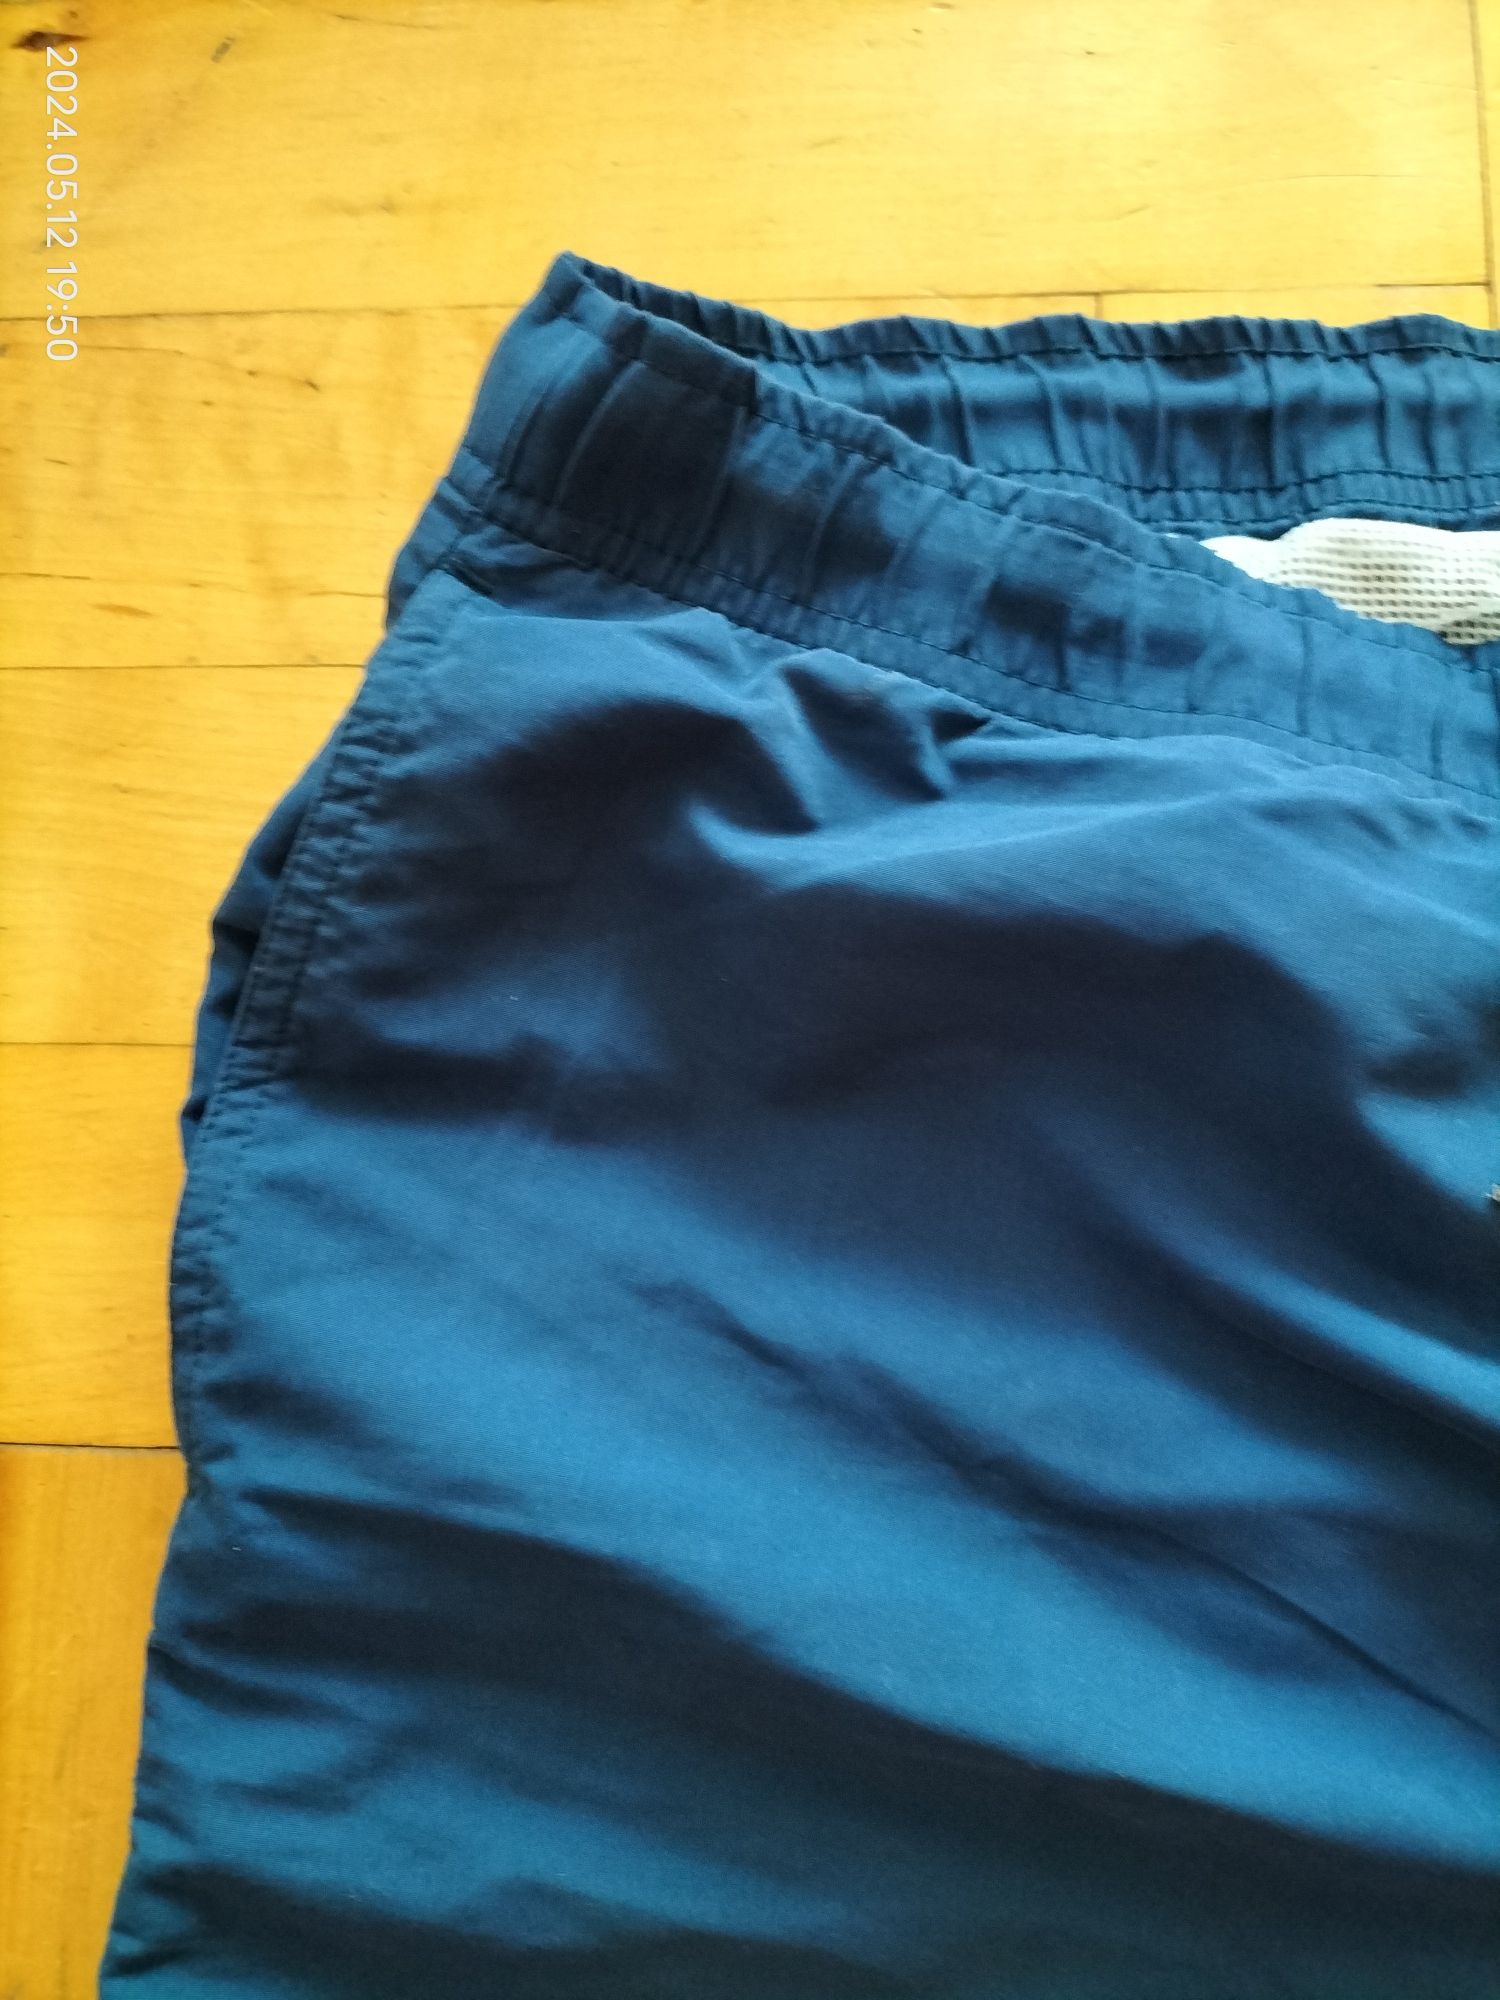 Męskie spodnie pływackie Aqua XL